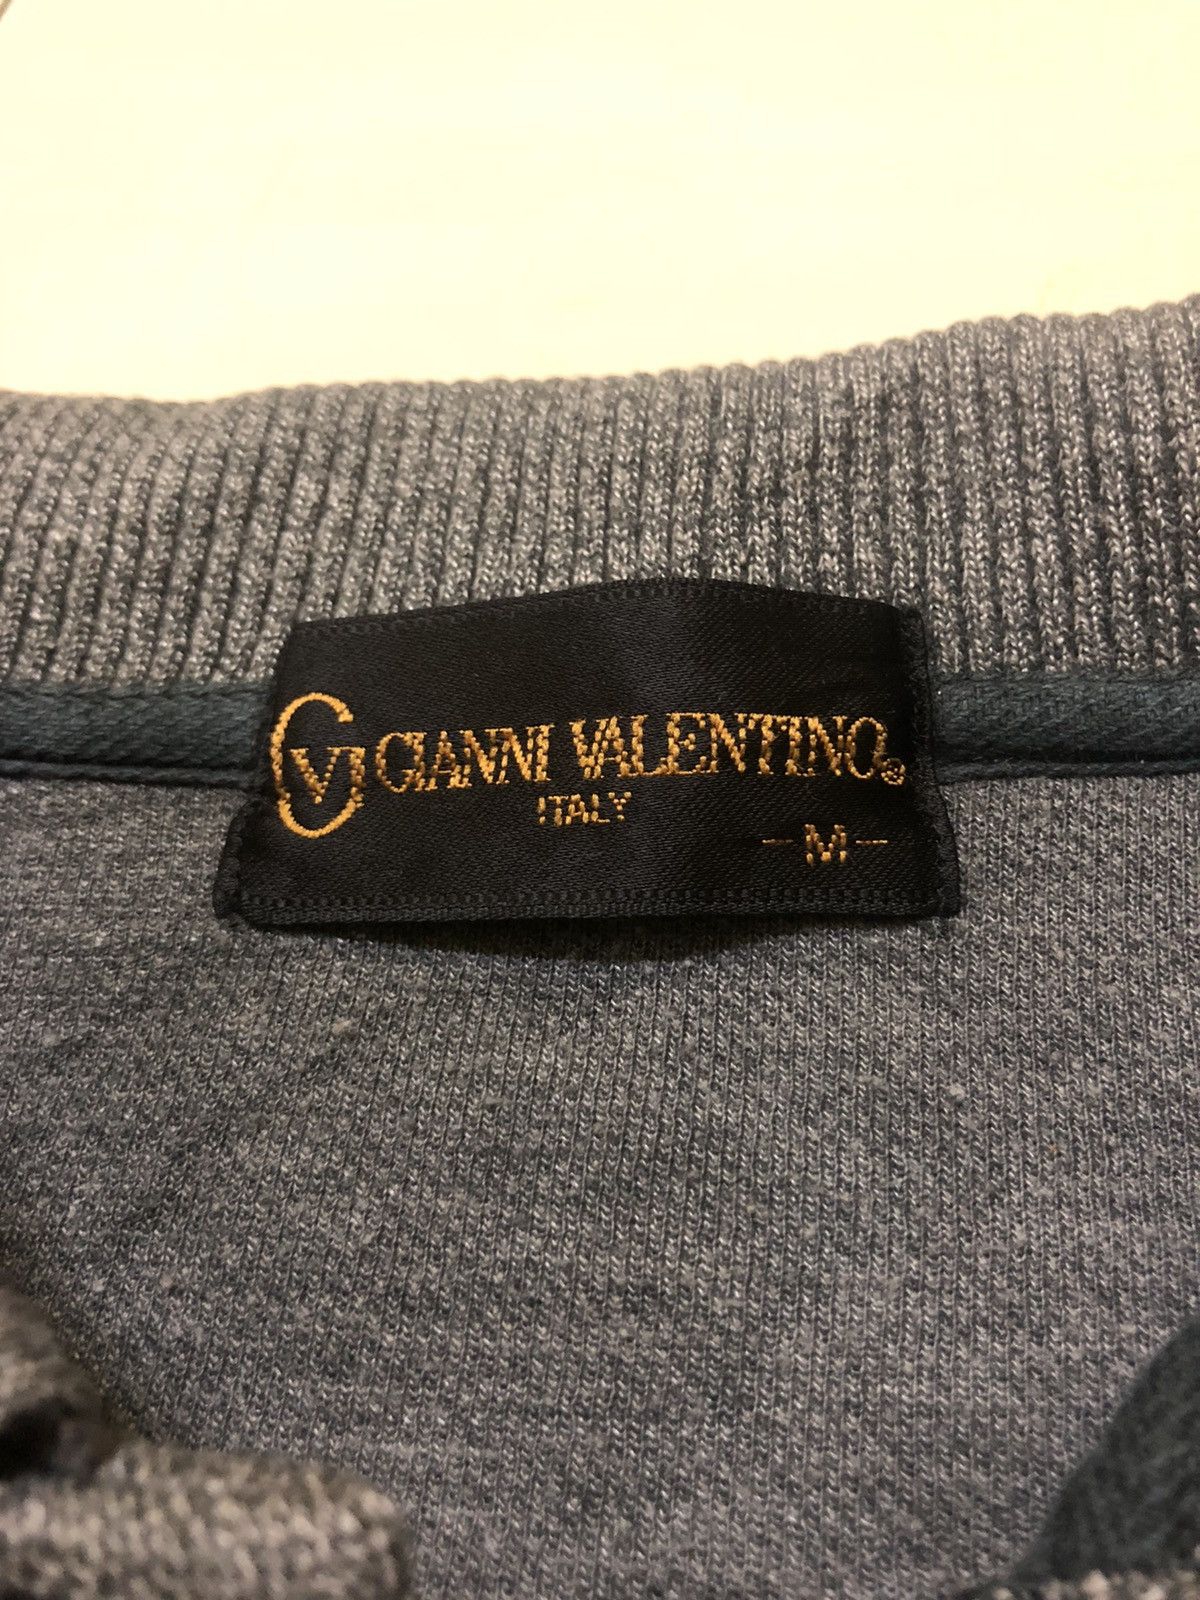 Valentino Gianni Valentino Polo Sweatshirt Vintage Size US M / EU 48-50 / 2 - 3 Preview